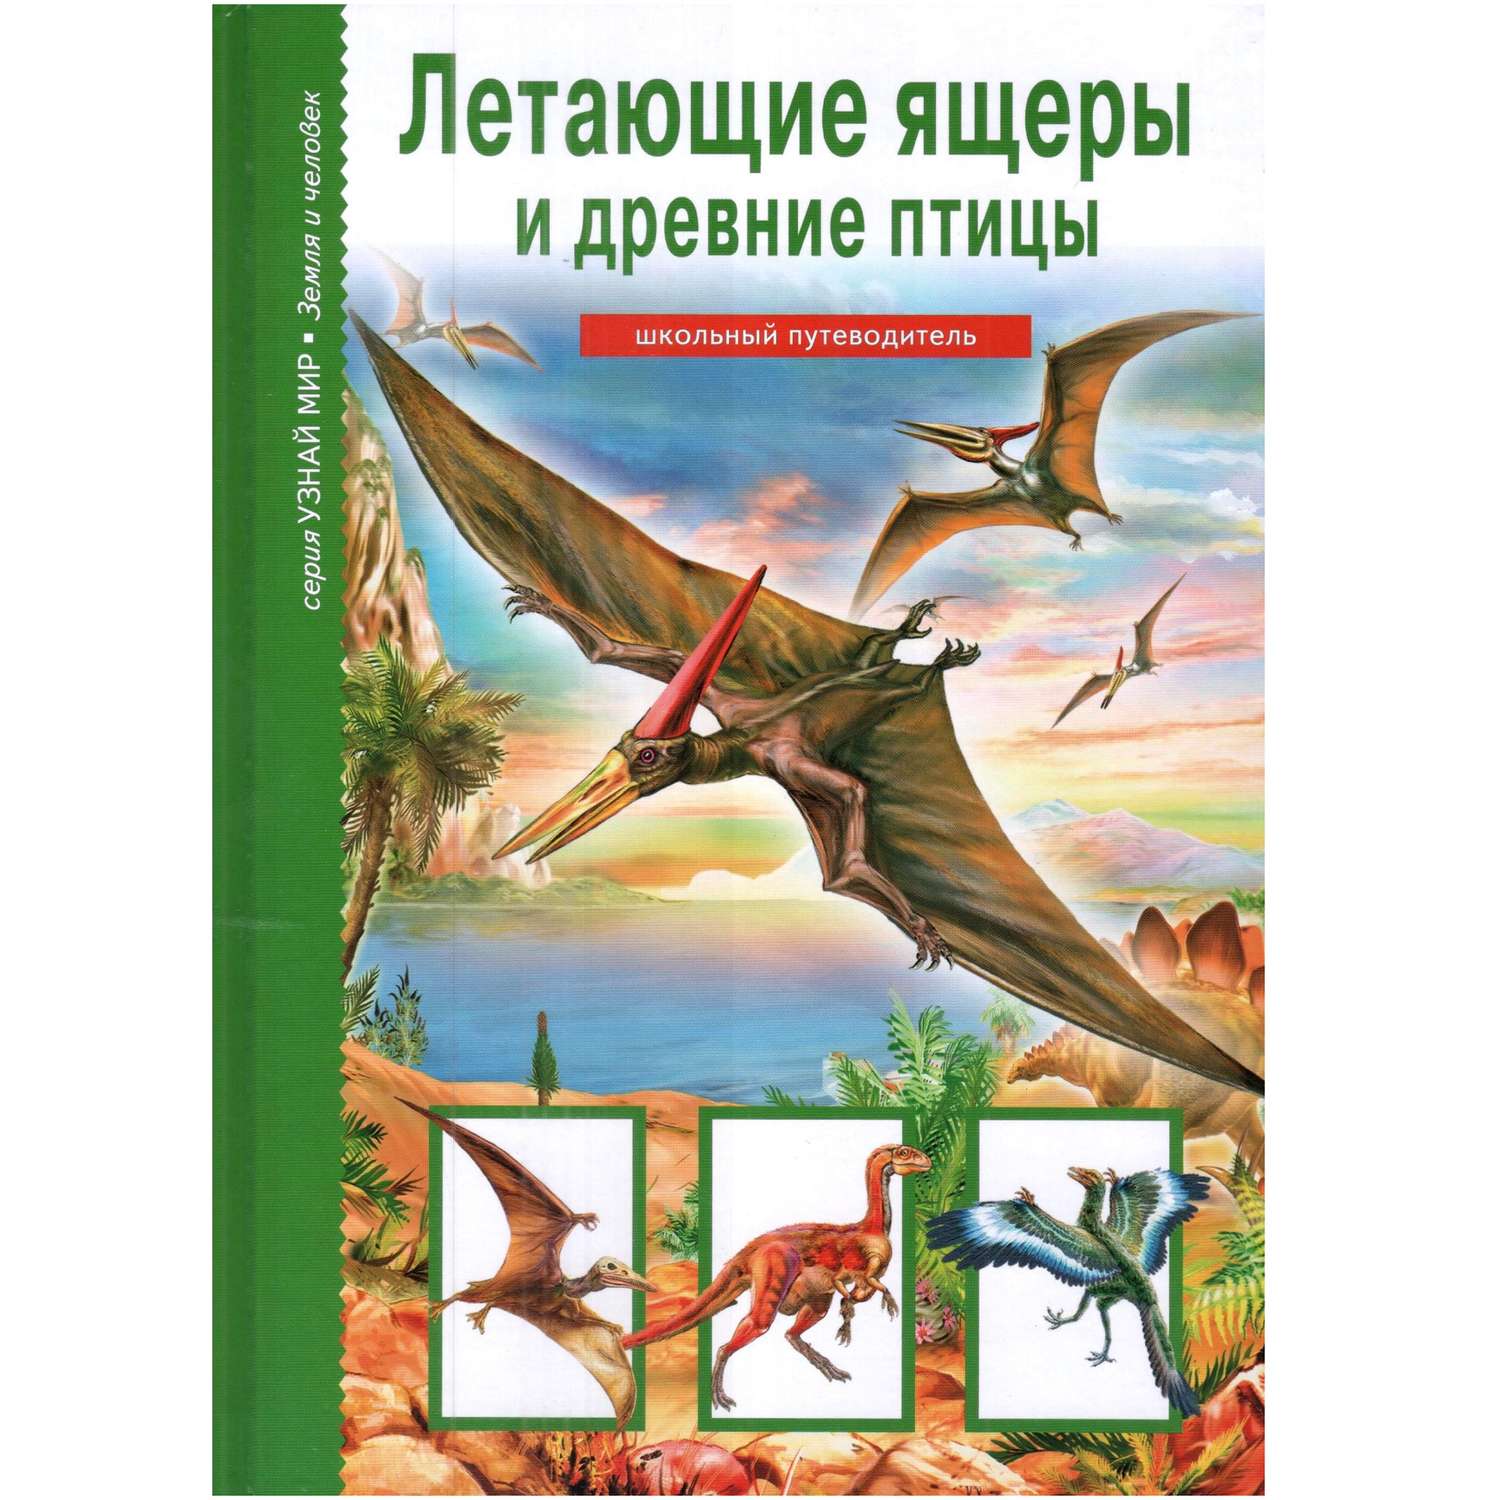 Книга Лада Летающие ящеры и древние птицы. Школьный путеводитель - фото 1